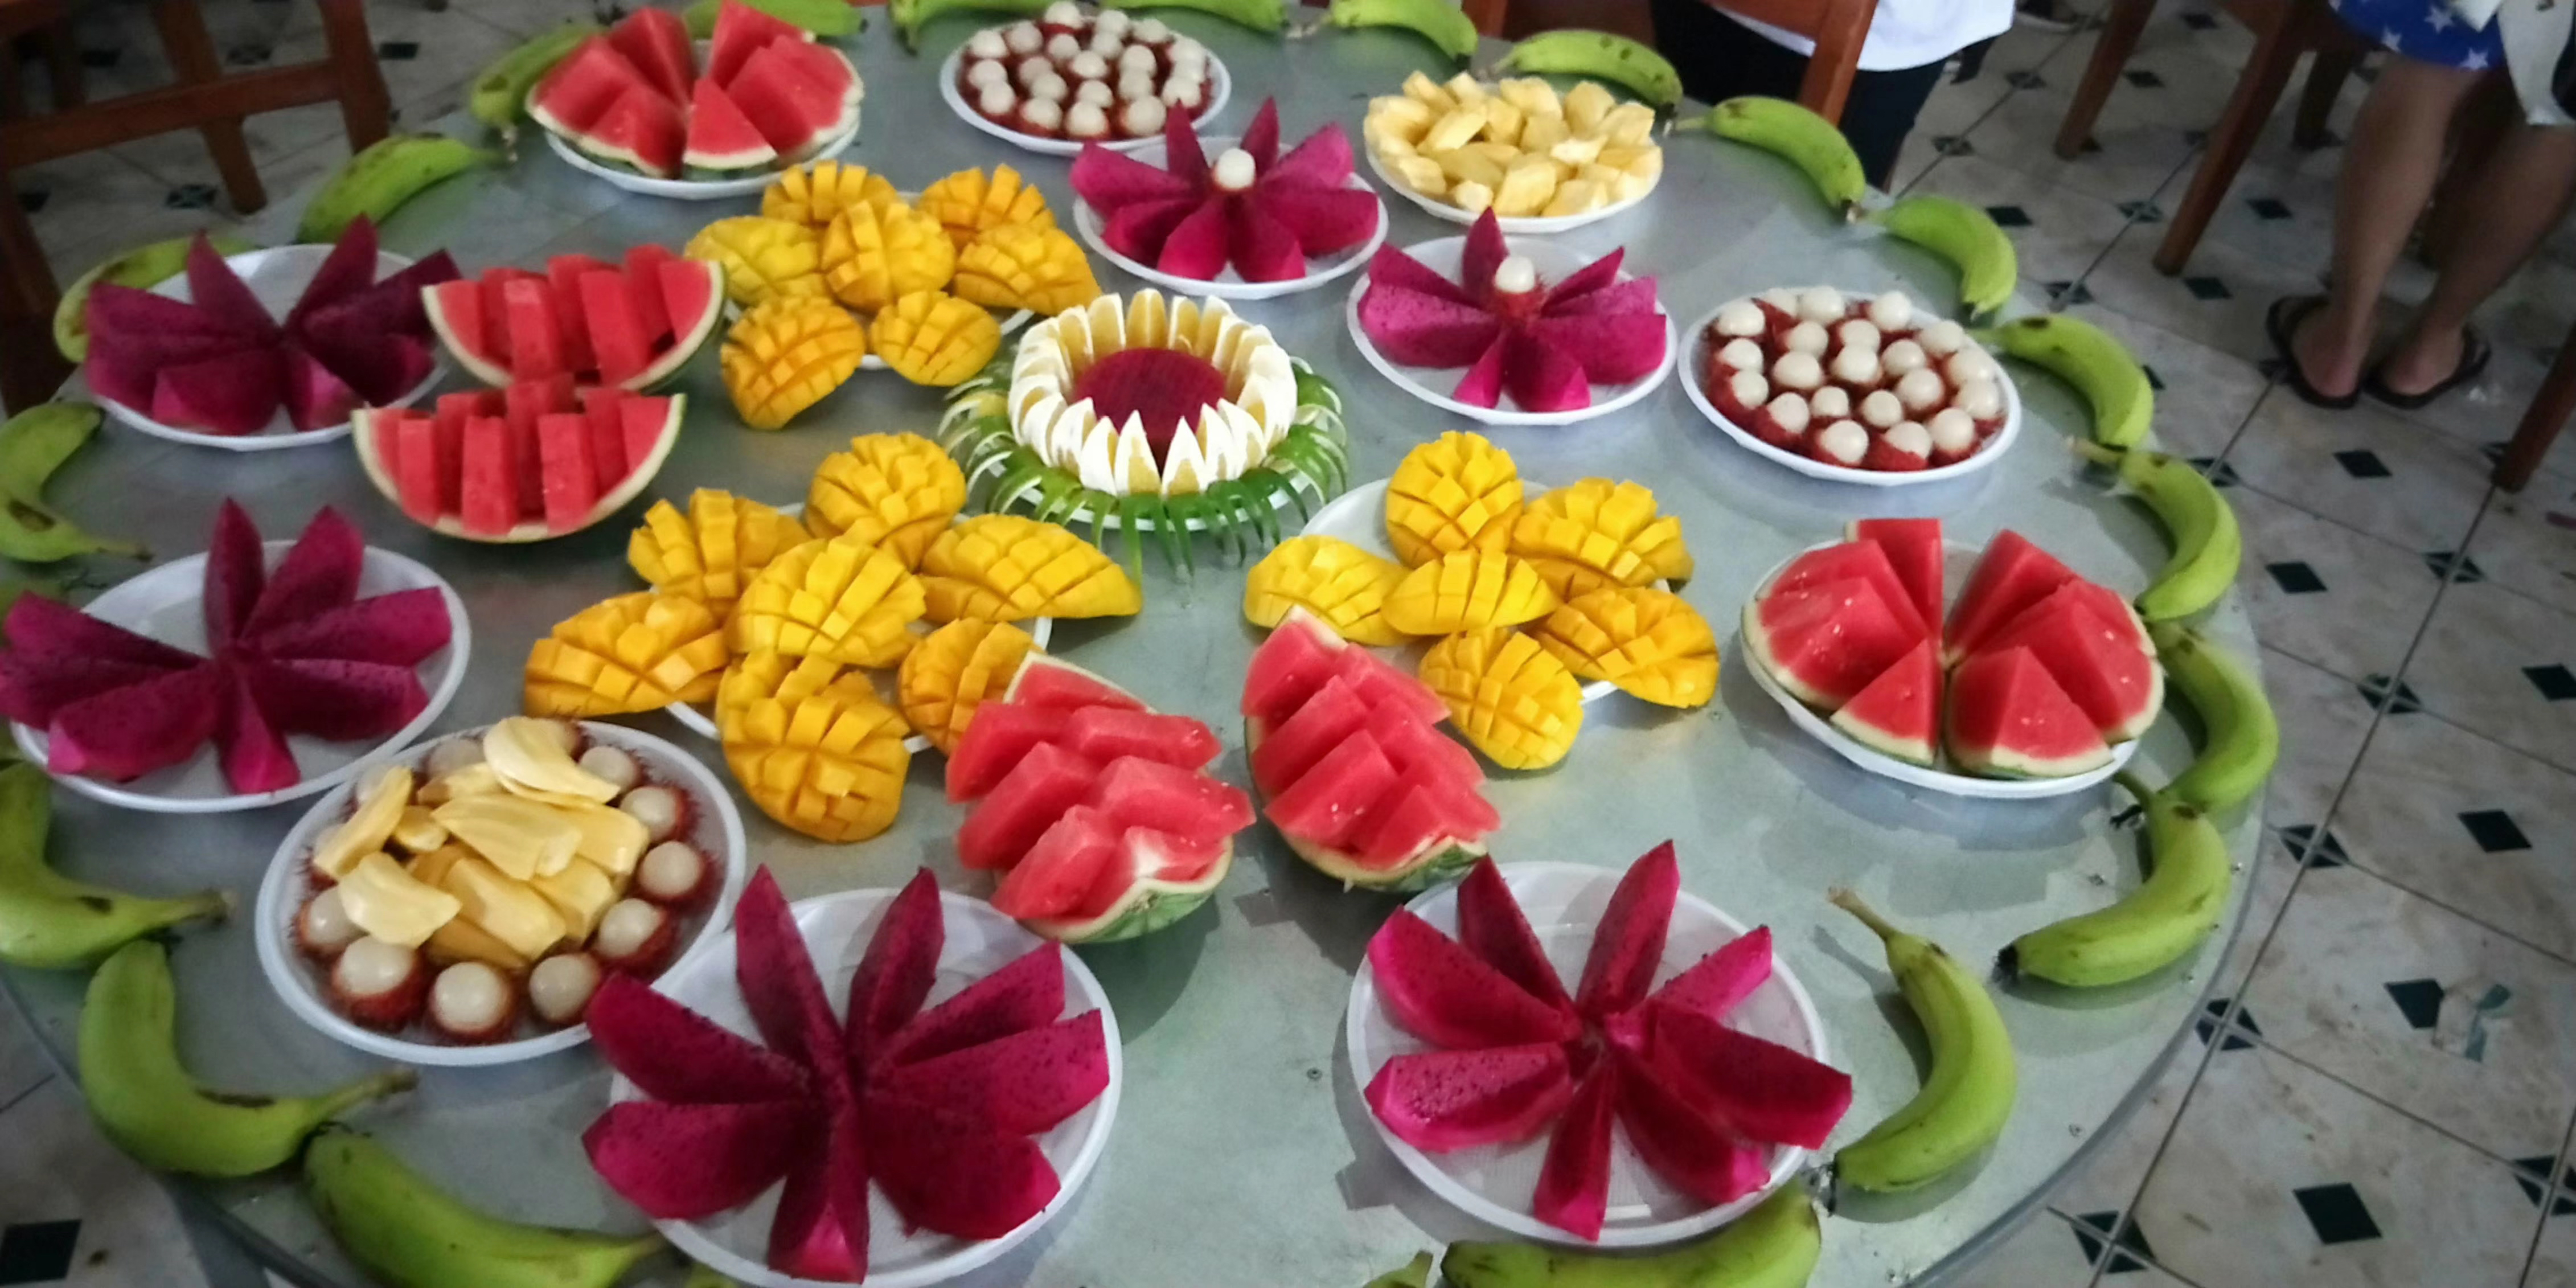 海南水果宴套餐图片